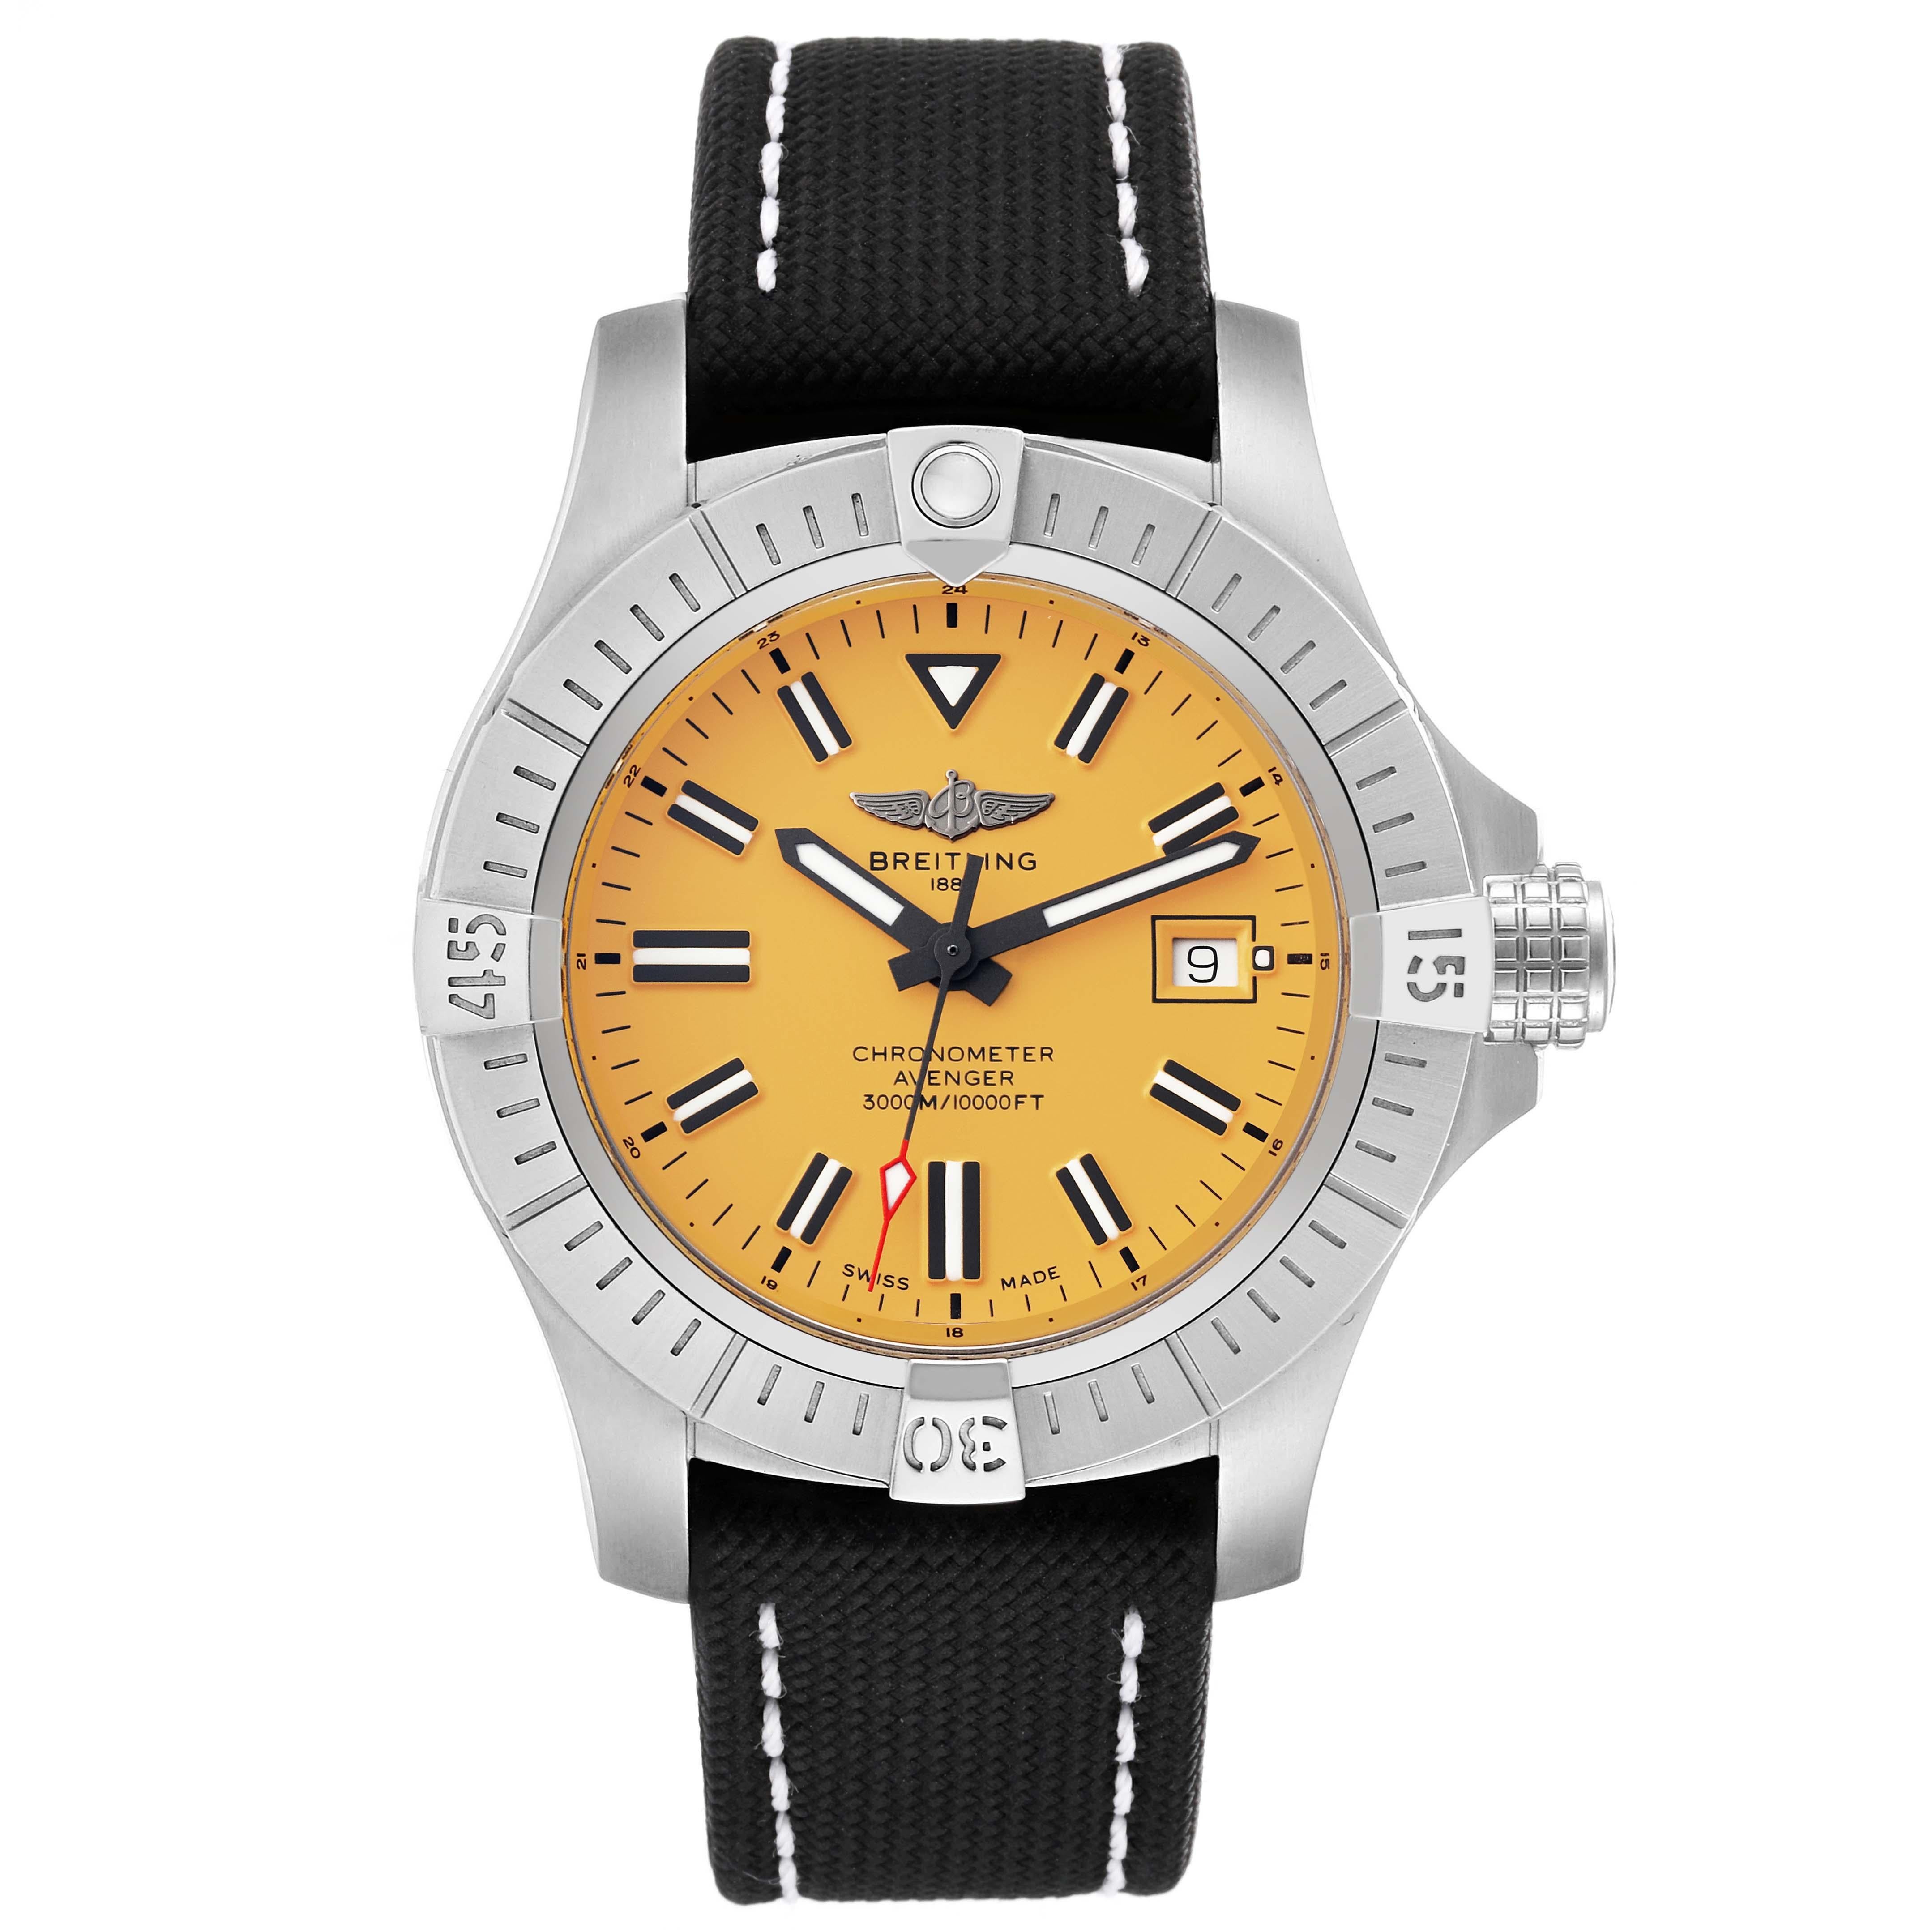 Breitling Avenger 45 Seawolf gelbes Zifferblatt Stahl Herrenuhr A17319 Box Card. Automatisches Uhrwerk mit Selbstaufzug. Gehäuse aus Edelstahl mit einem Durchmesser von 45 mm. Signierte verschraubte Krone. Einseitig drehbare Lünette aus Edelstahl.